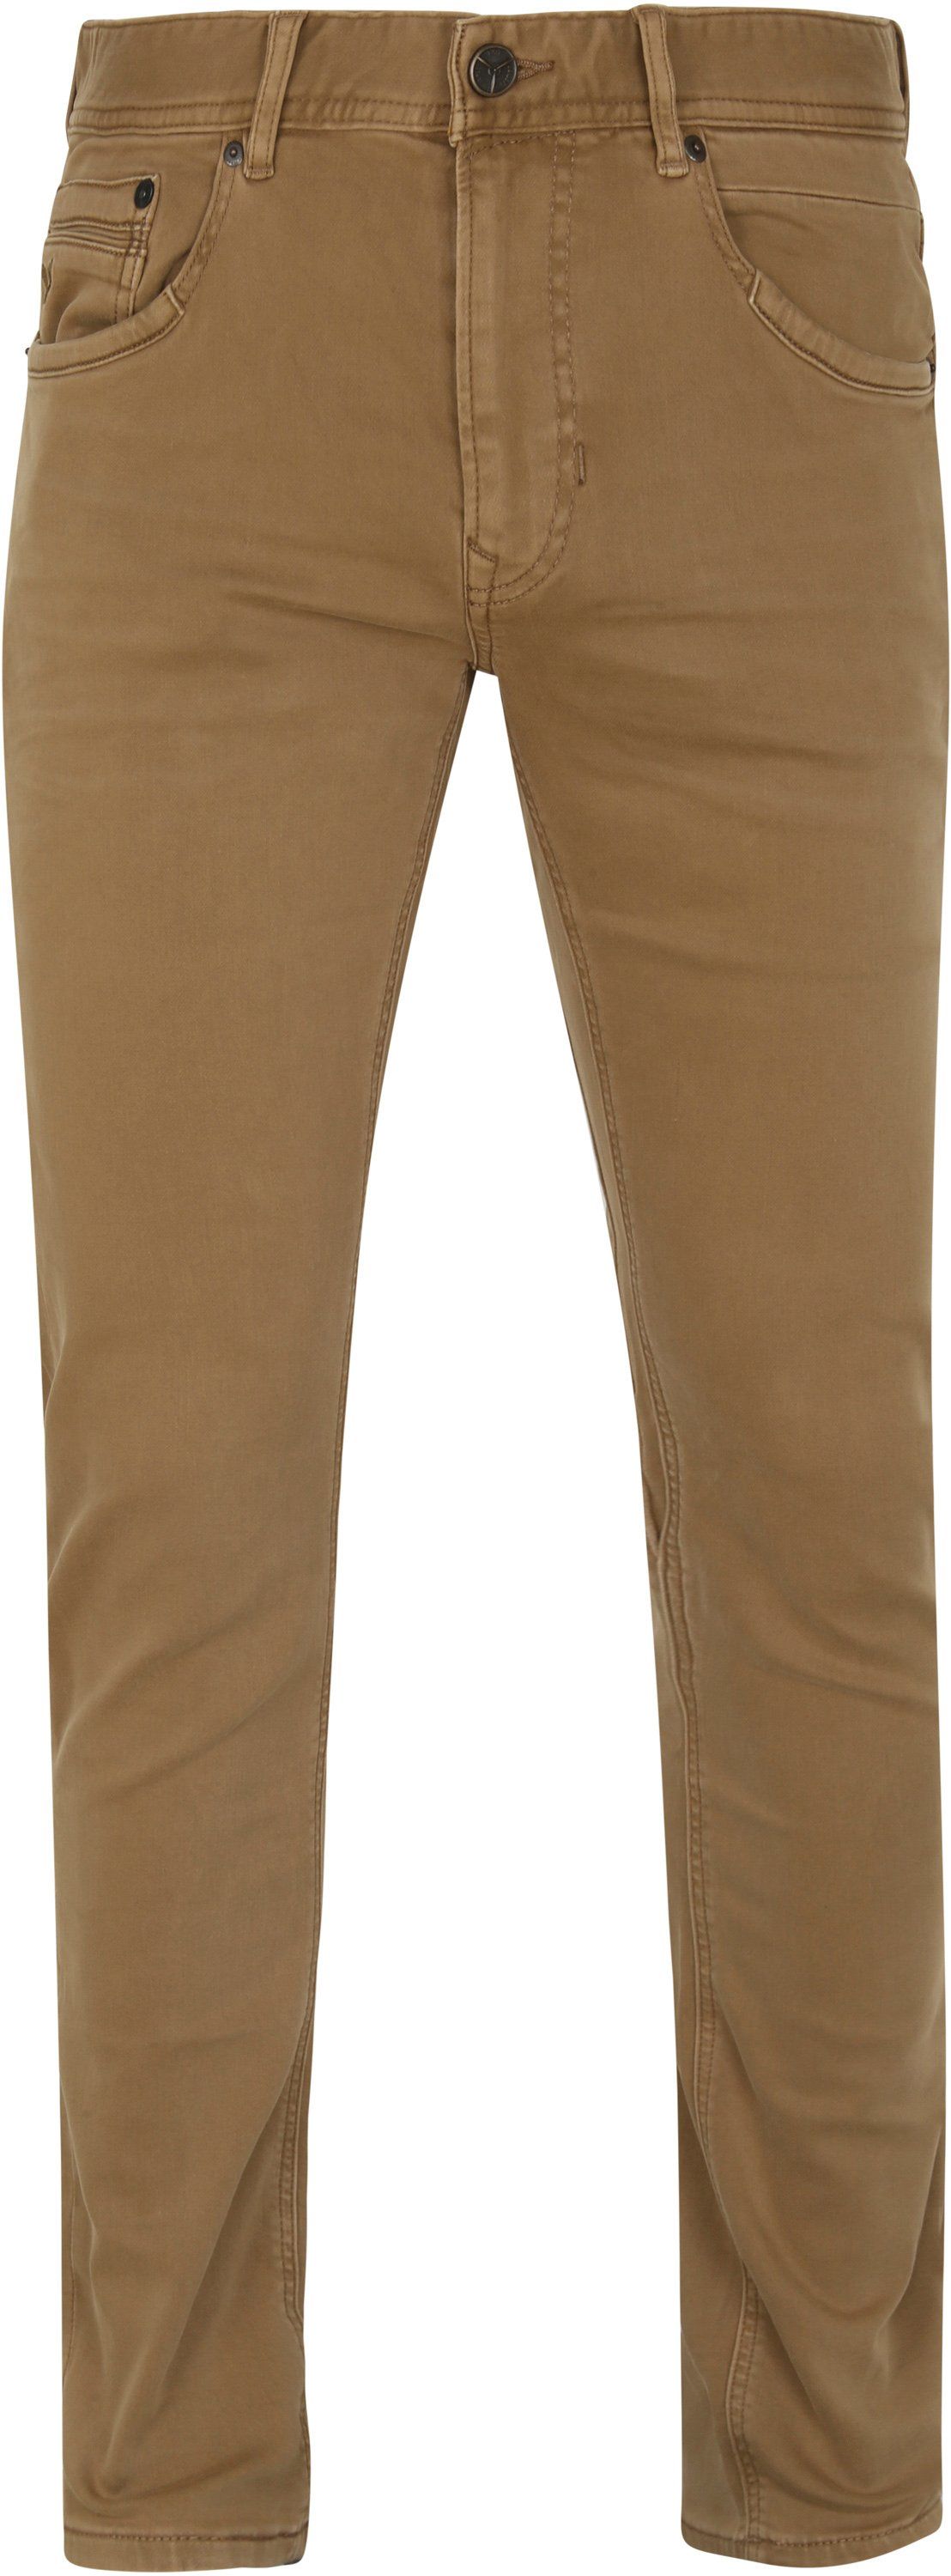 PME Legend Tailwheel Trousers Beige size W 31